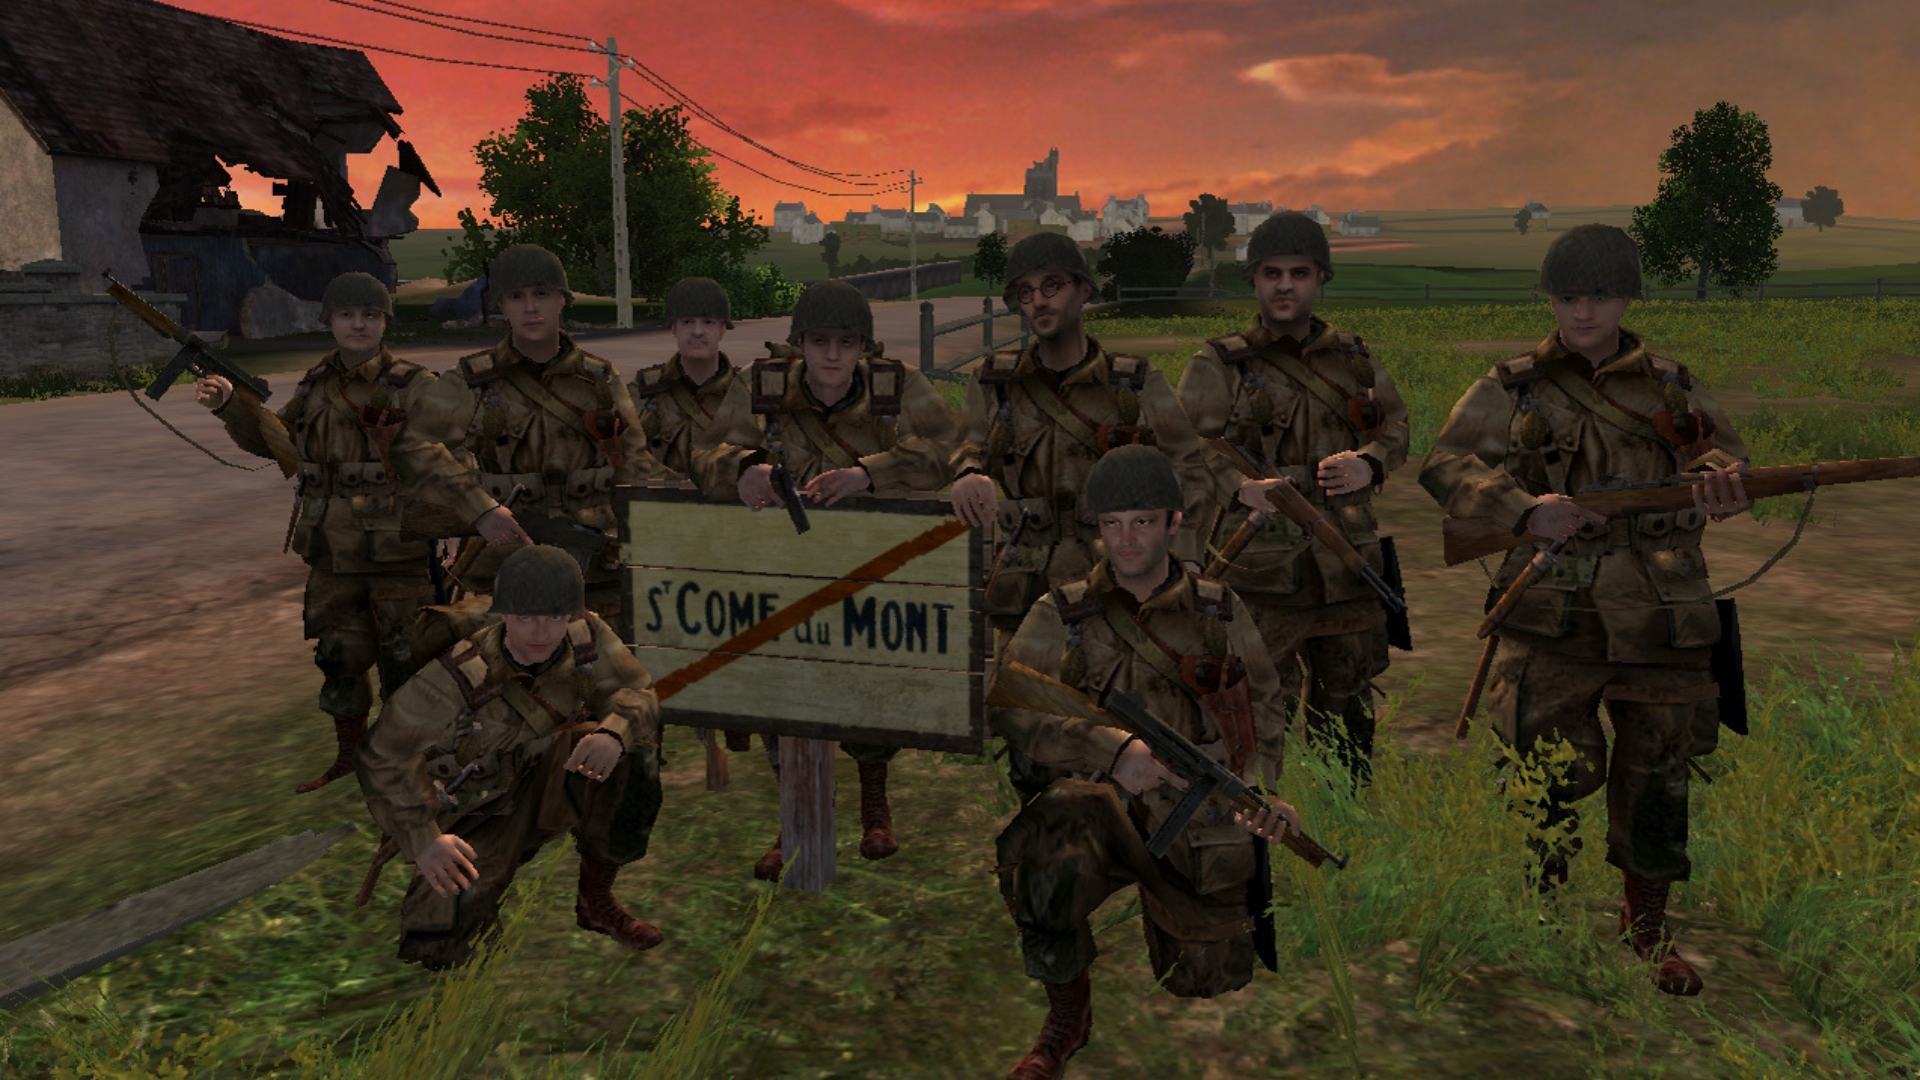 Melhores Jogos de Guerra - Brothers in Arms Road to Hill 30. A imagem mostra um terreno de soldados posando para uma foto em grupo